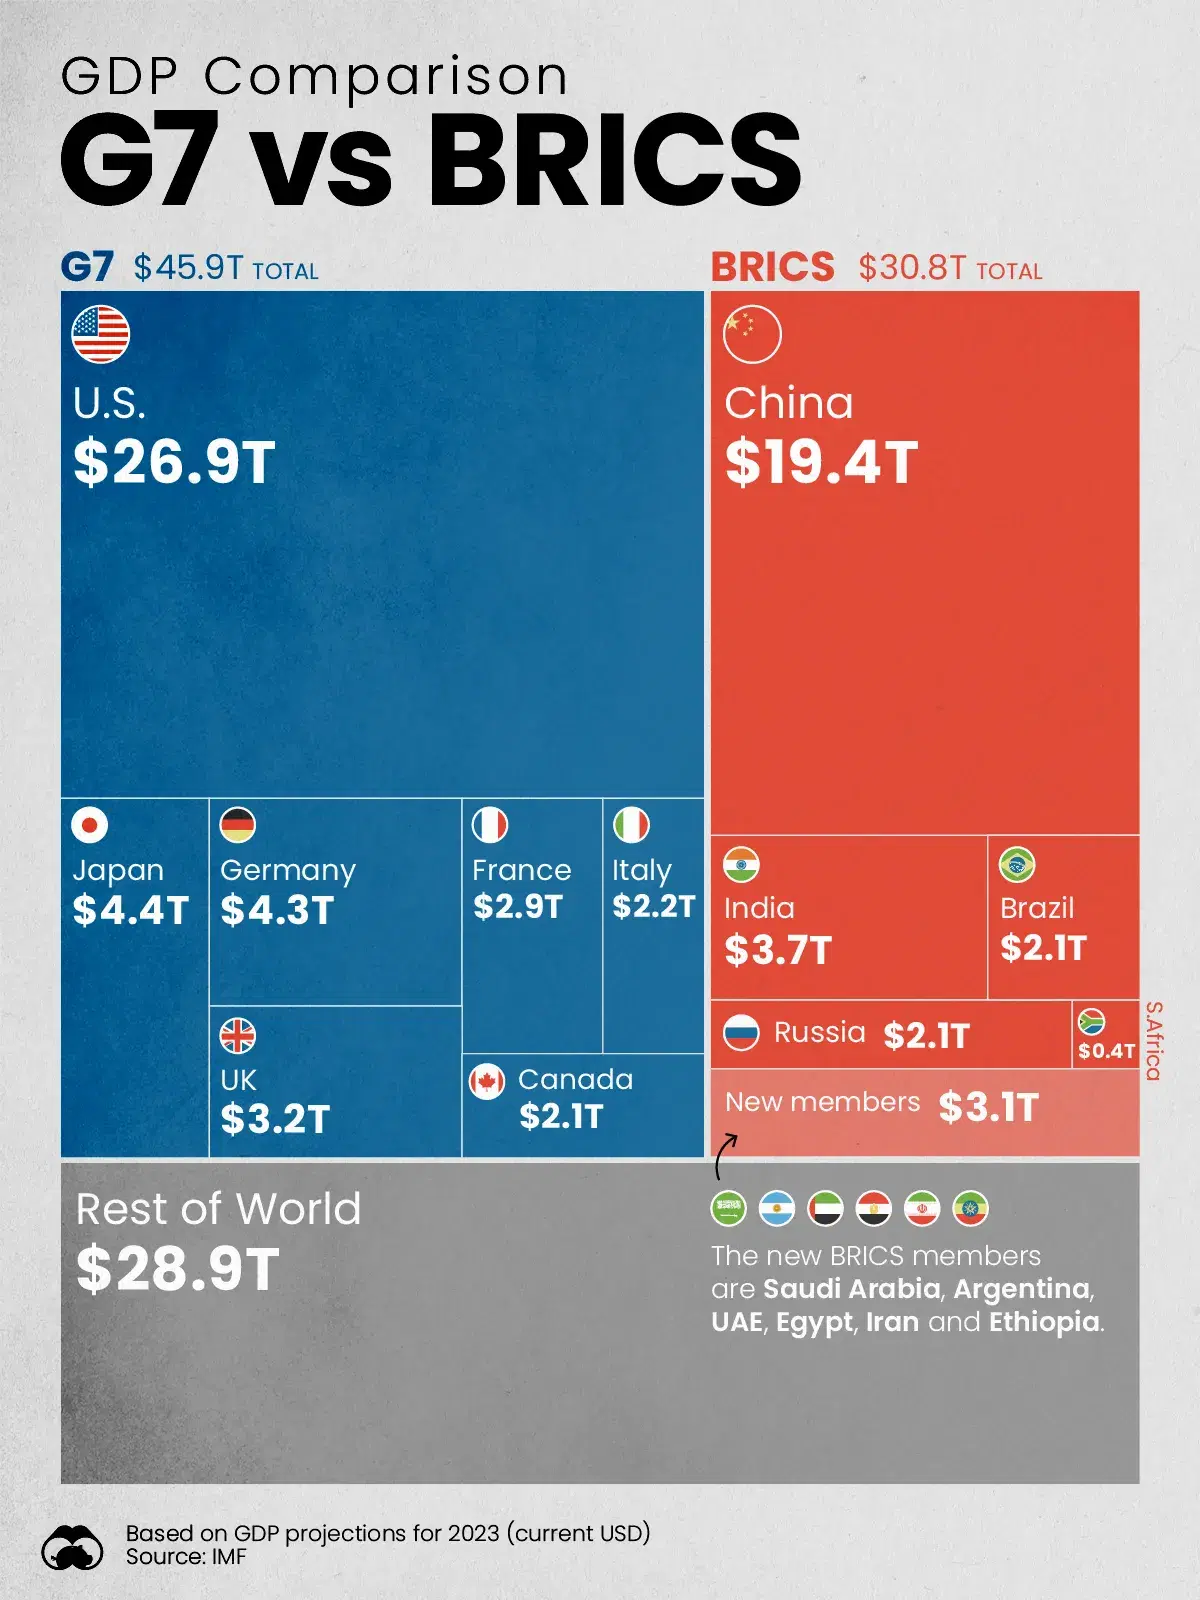 G7 vs BRICS: GDP Comparison